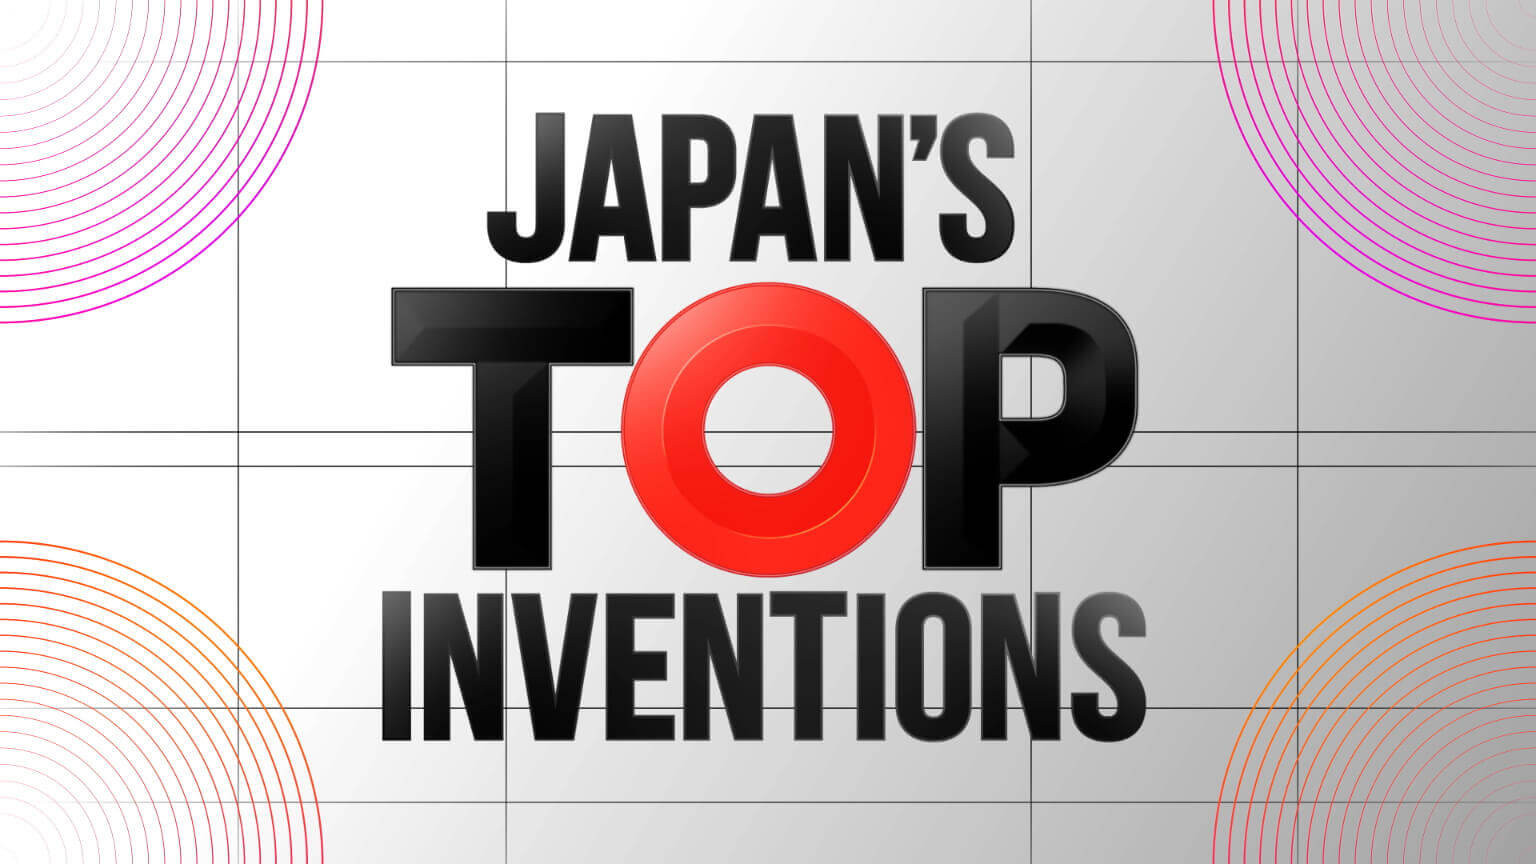 Phát kiến hàng đầu Nhật Bản
Japan's Top Inventions